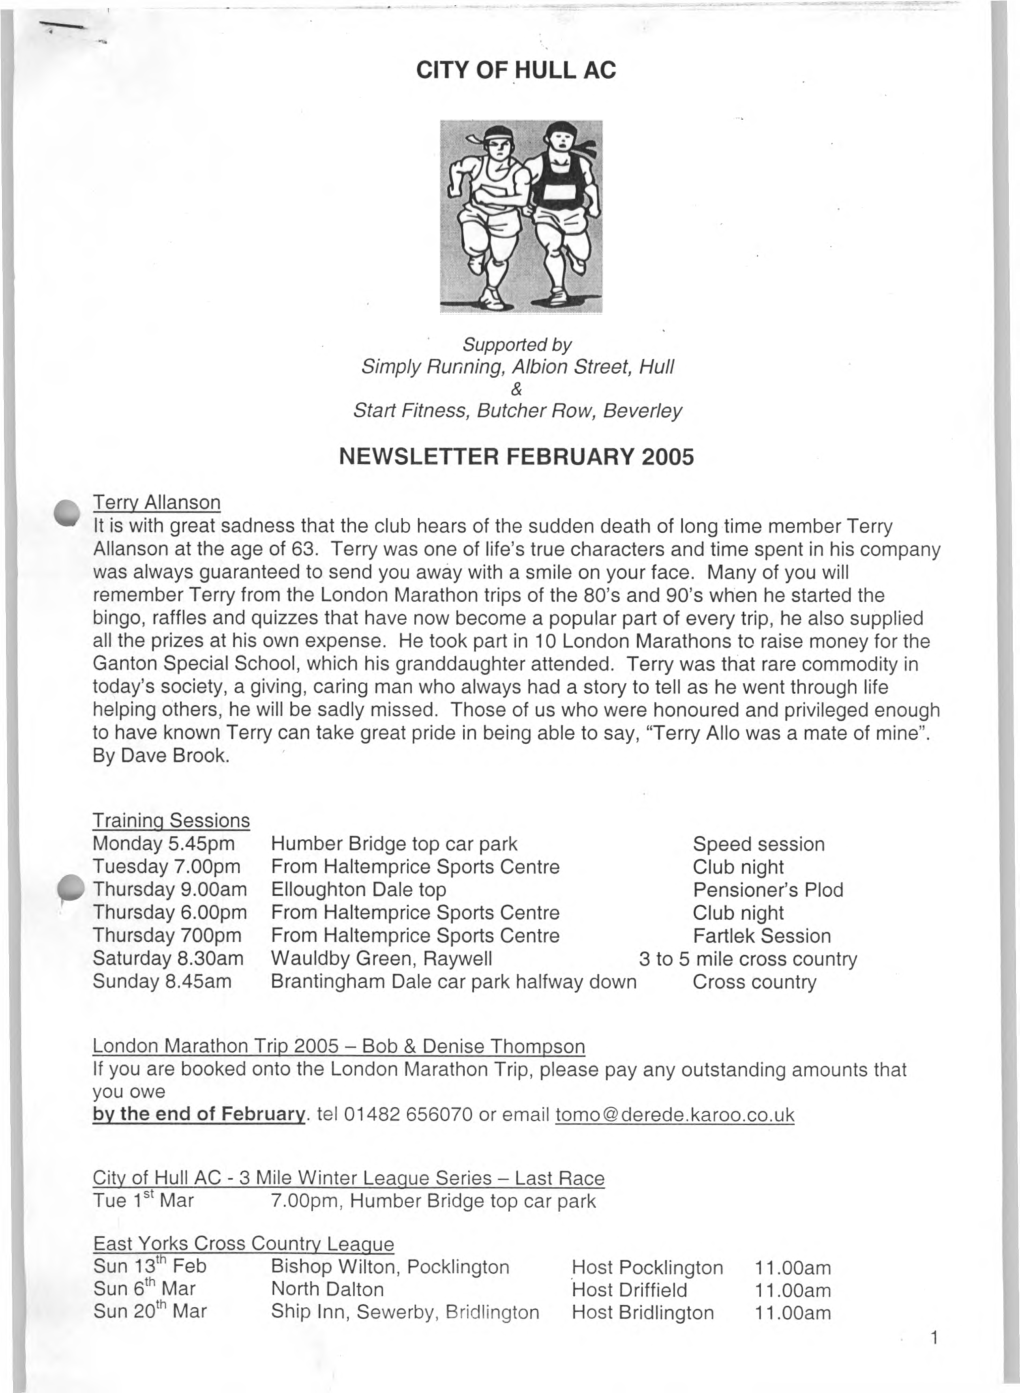 City of Hull Ac Newsletter February 2005